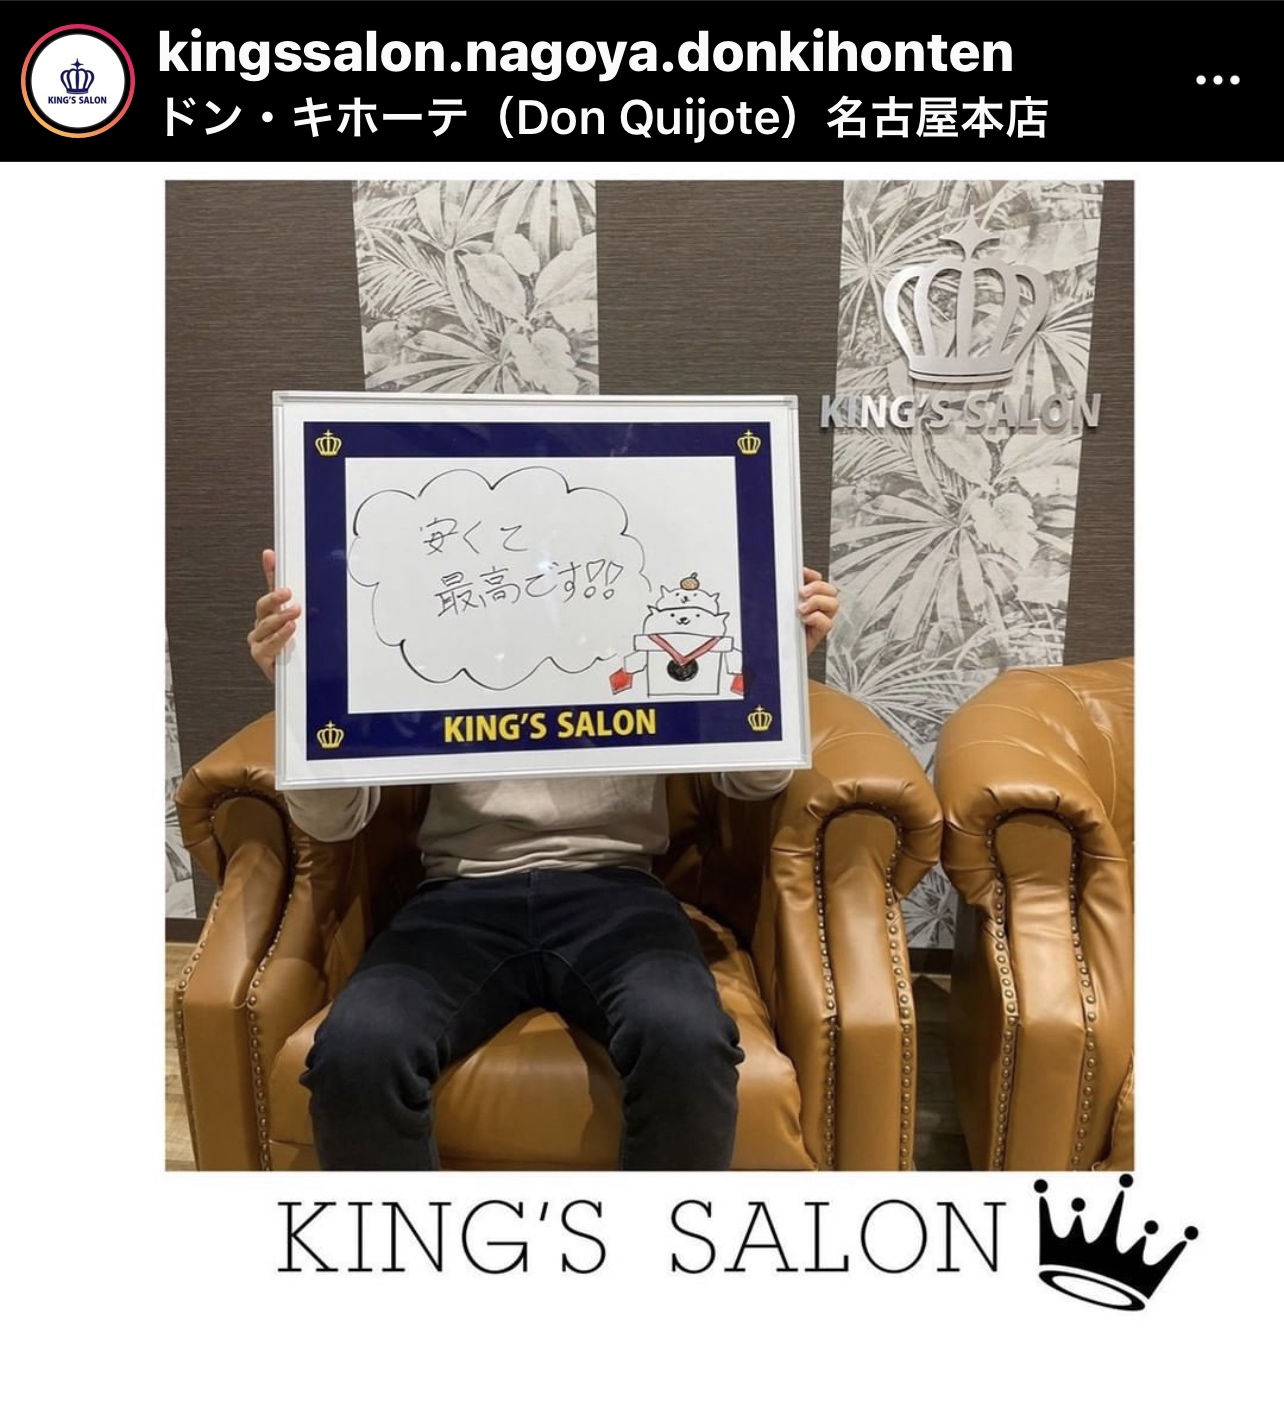 キングスサロンMEGAドン・キホーテ名古屋本店 お客様の声 サムネイル画像